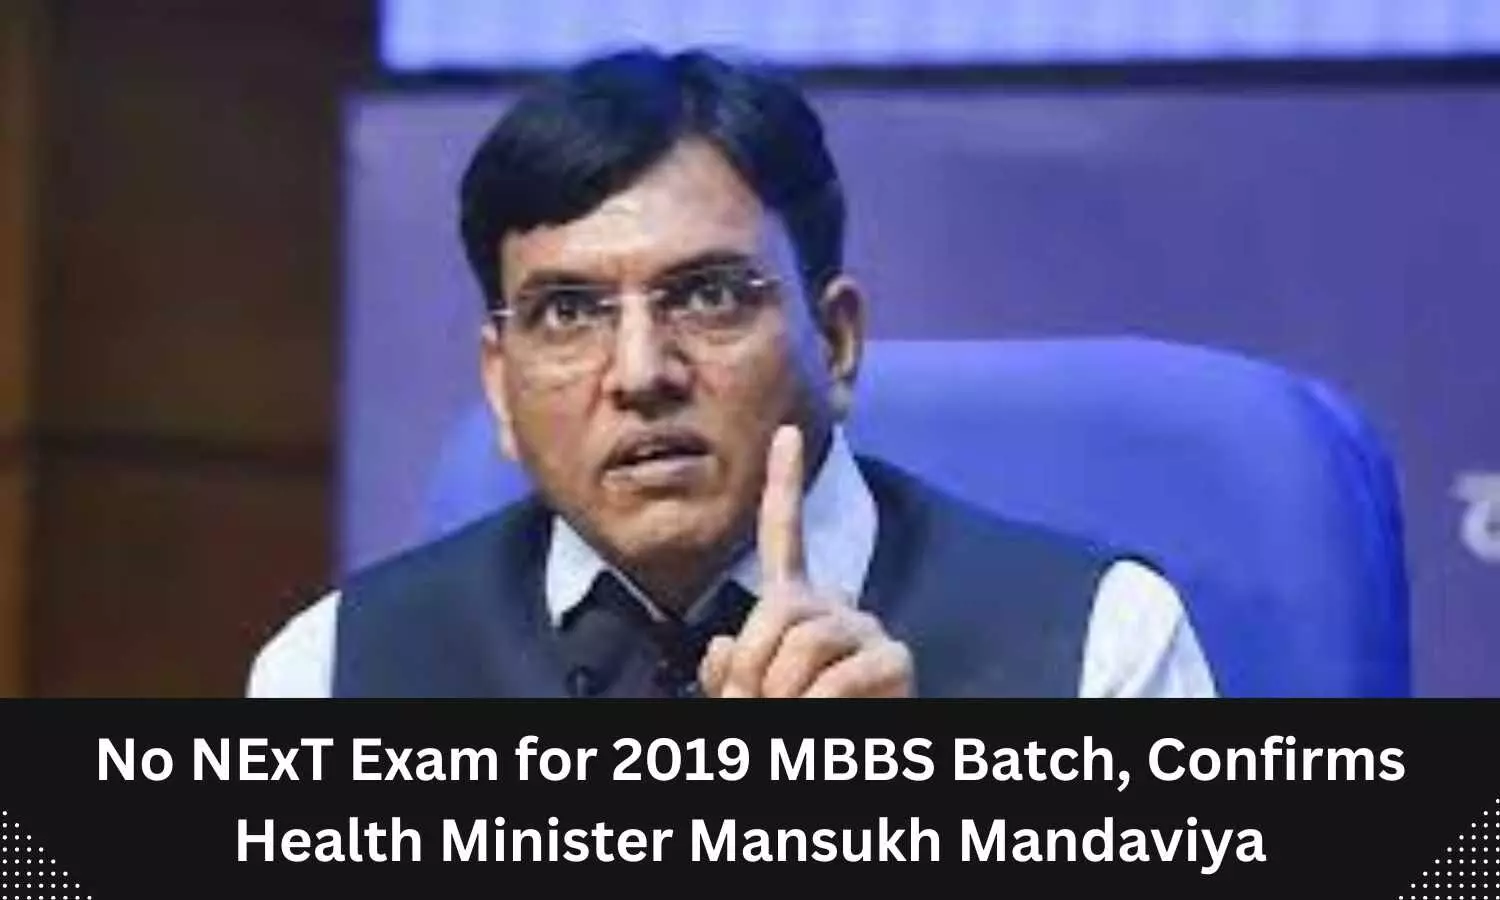 No Next exam for 2019 MBBS batch: Mansukh Mandaviya